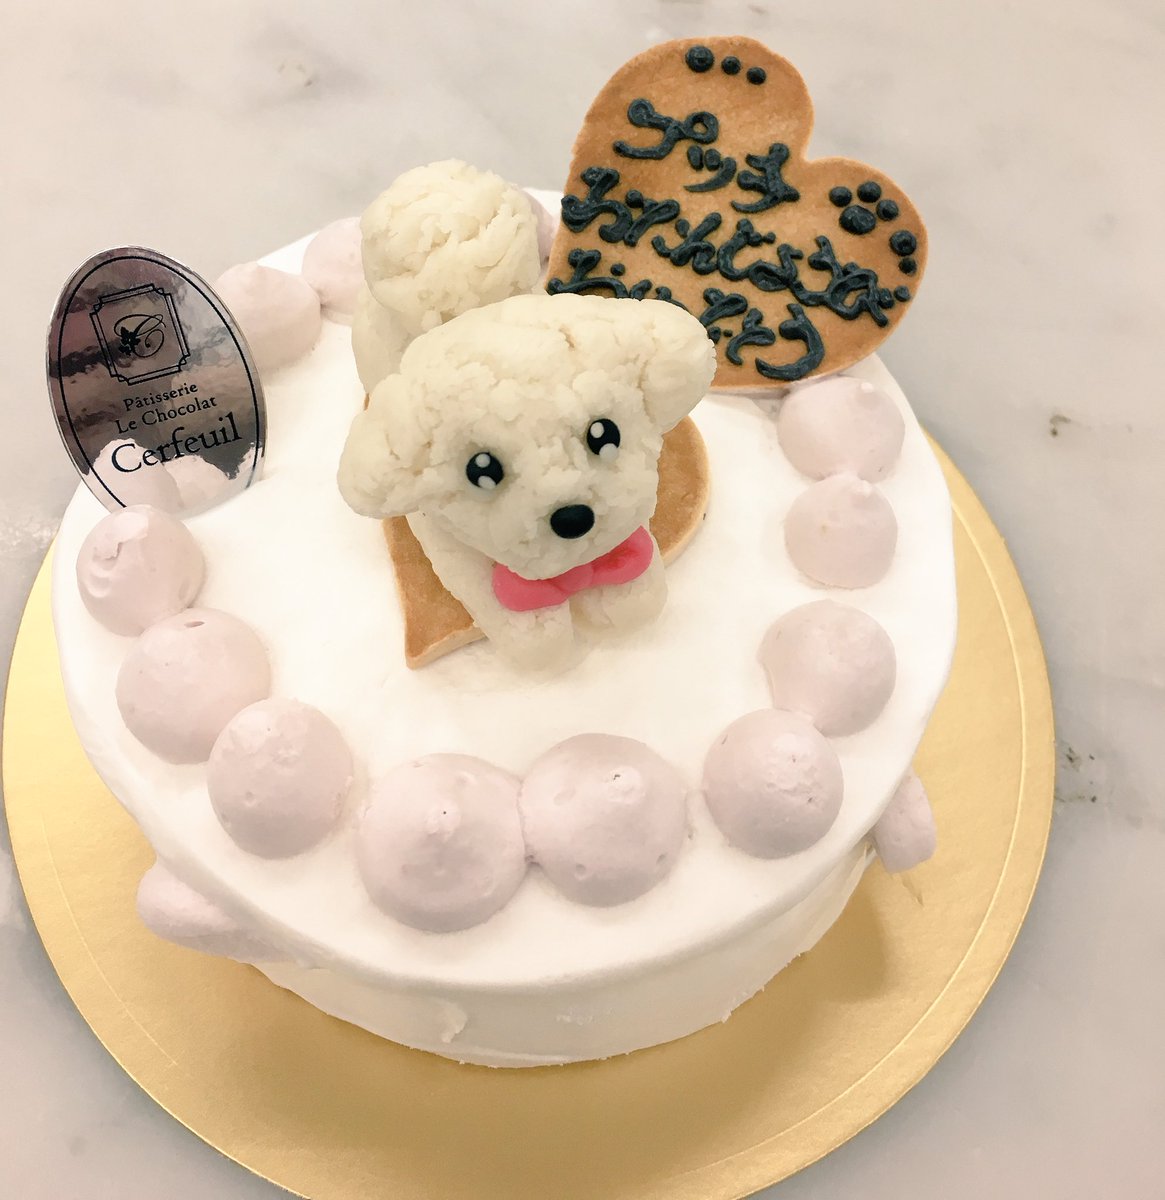 Yumiko Pa Twitter 昨日注文ではいった 犬用ケーキ N トイプードルをマジパンでとのことでしたので急遽作ってみました N デコレーションケーキ 犬用ケーキ